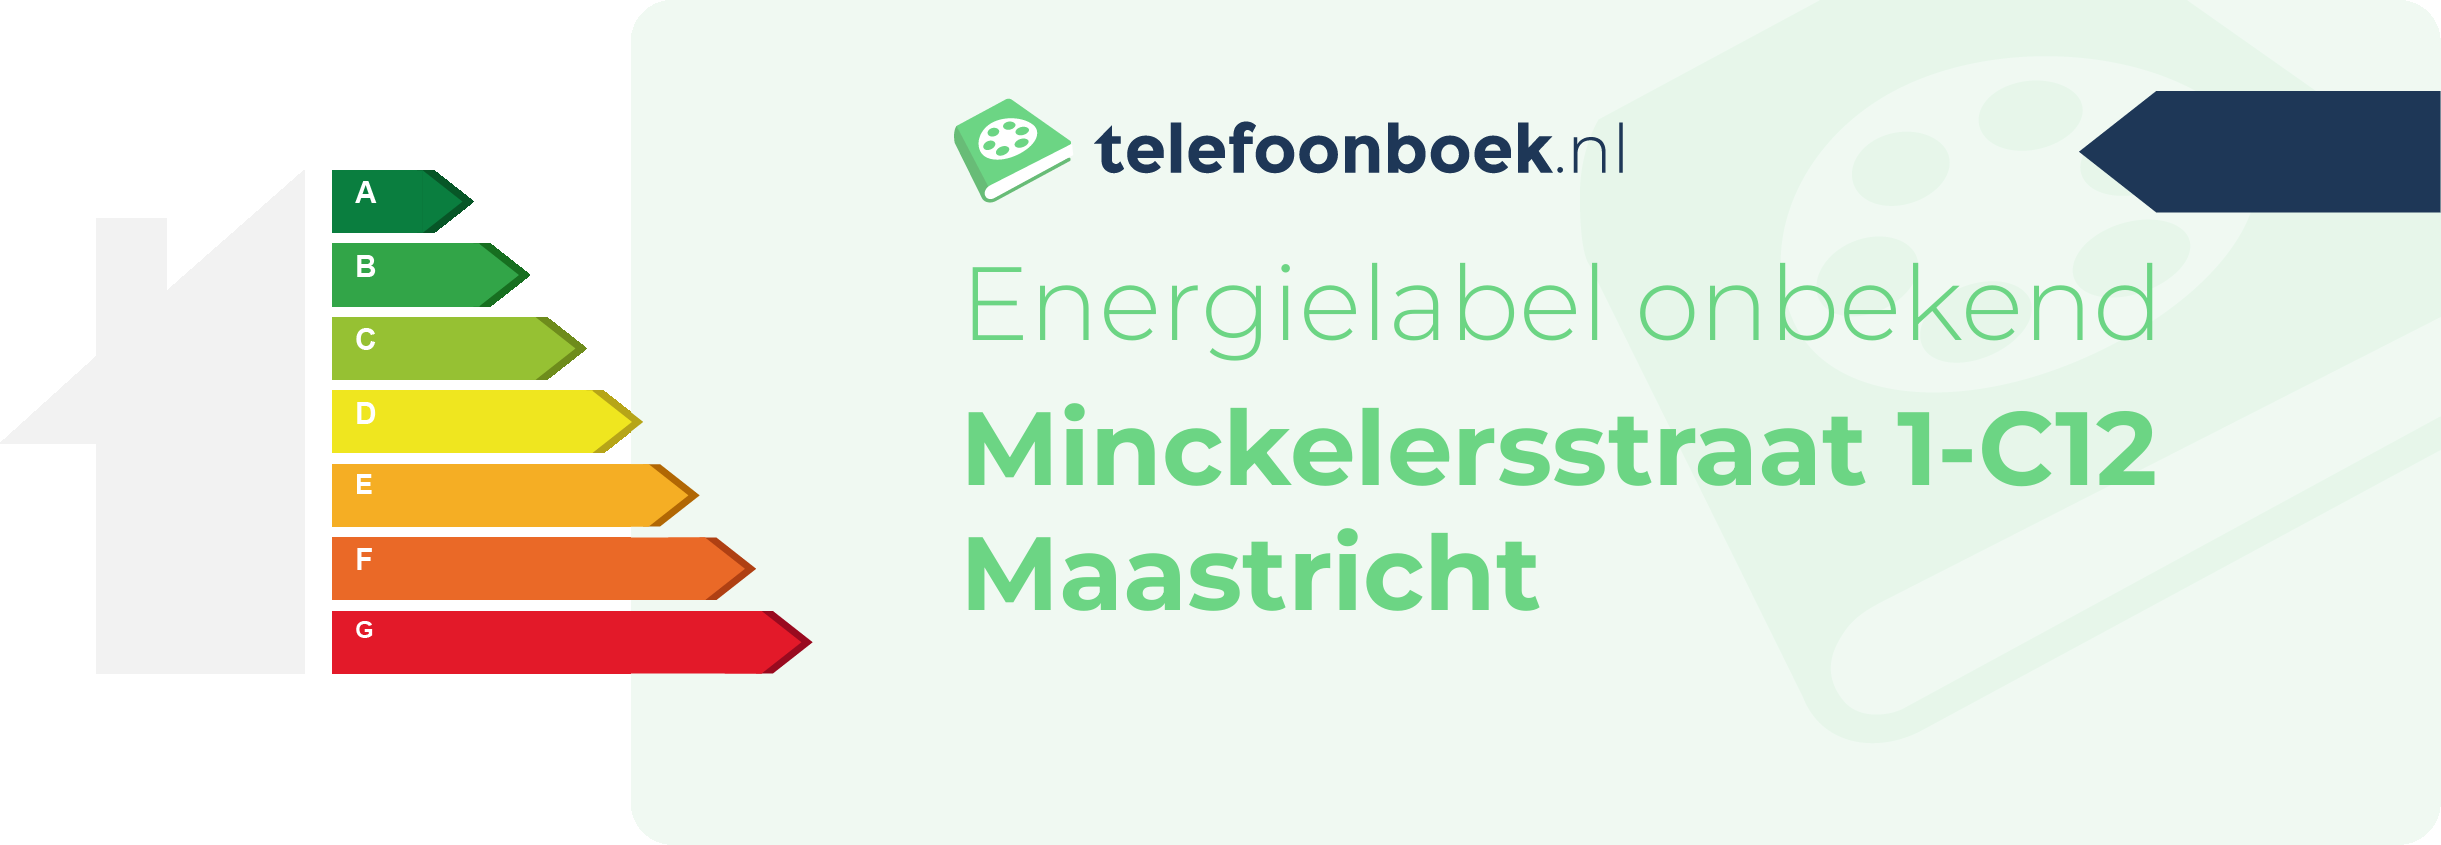 Energielabel Minckelersstraat 1-C12 Maastricht